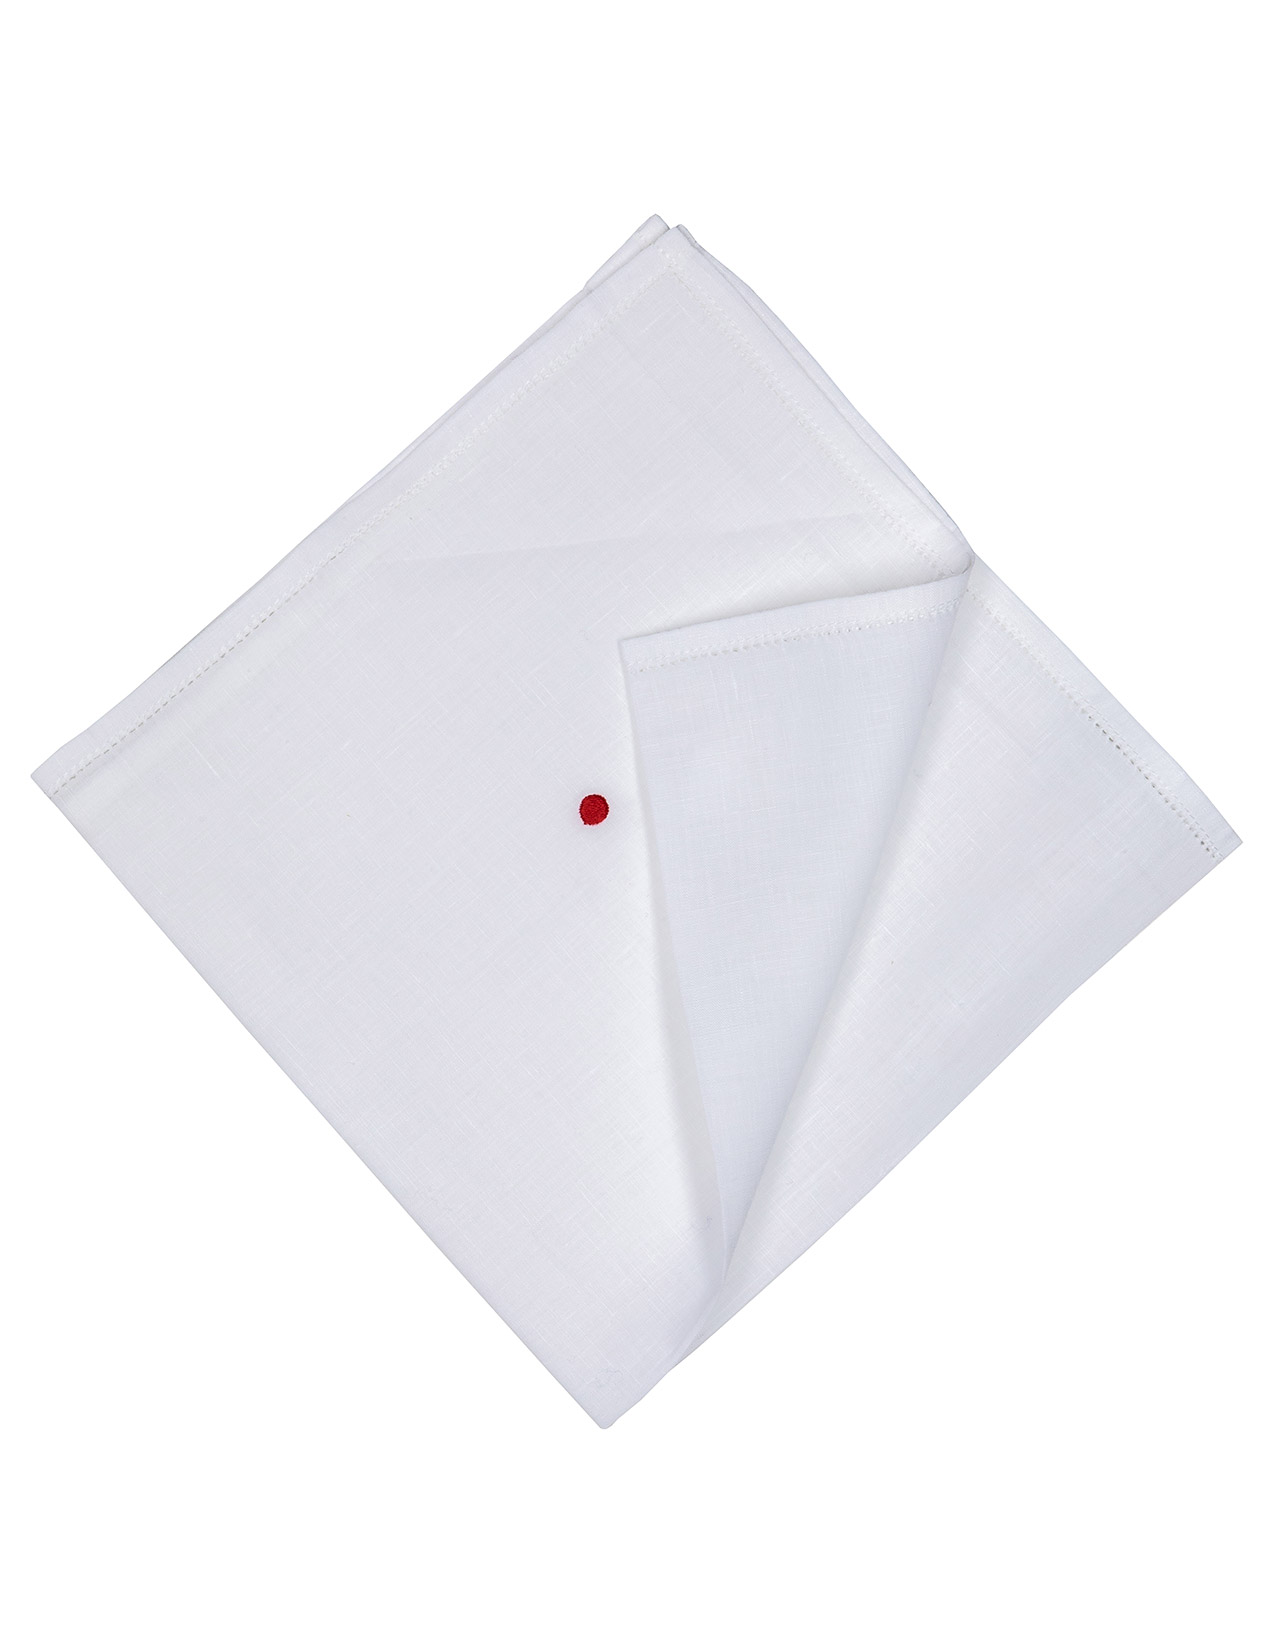 Kiton Einstecktuch in weiß mit abgesetzter Borte und einem roten Punkt